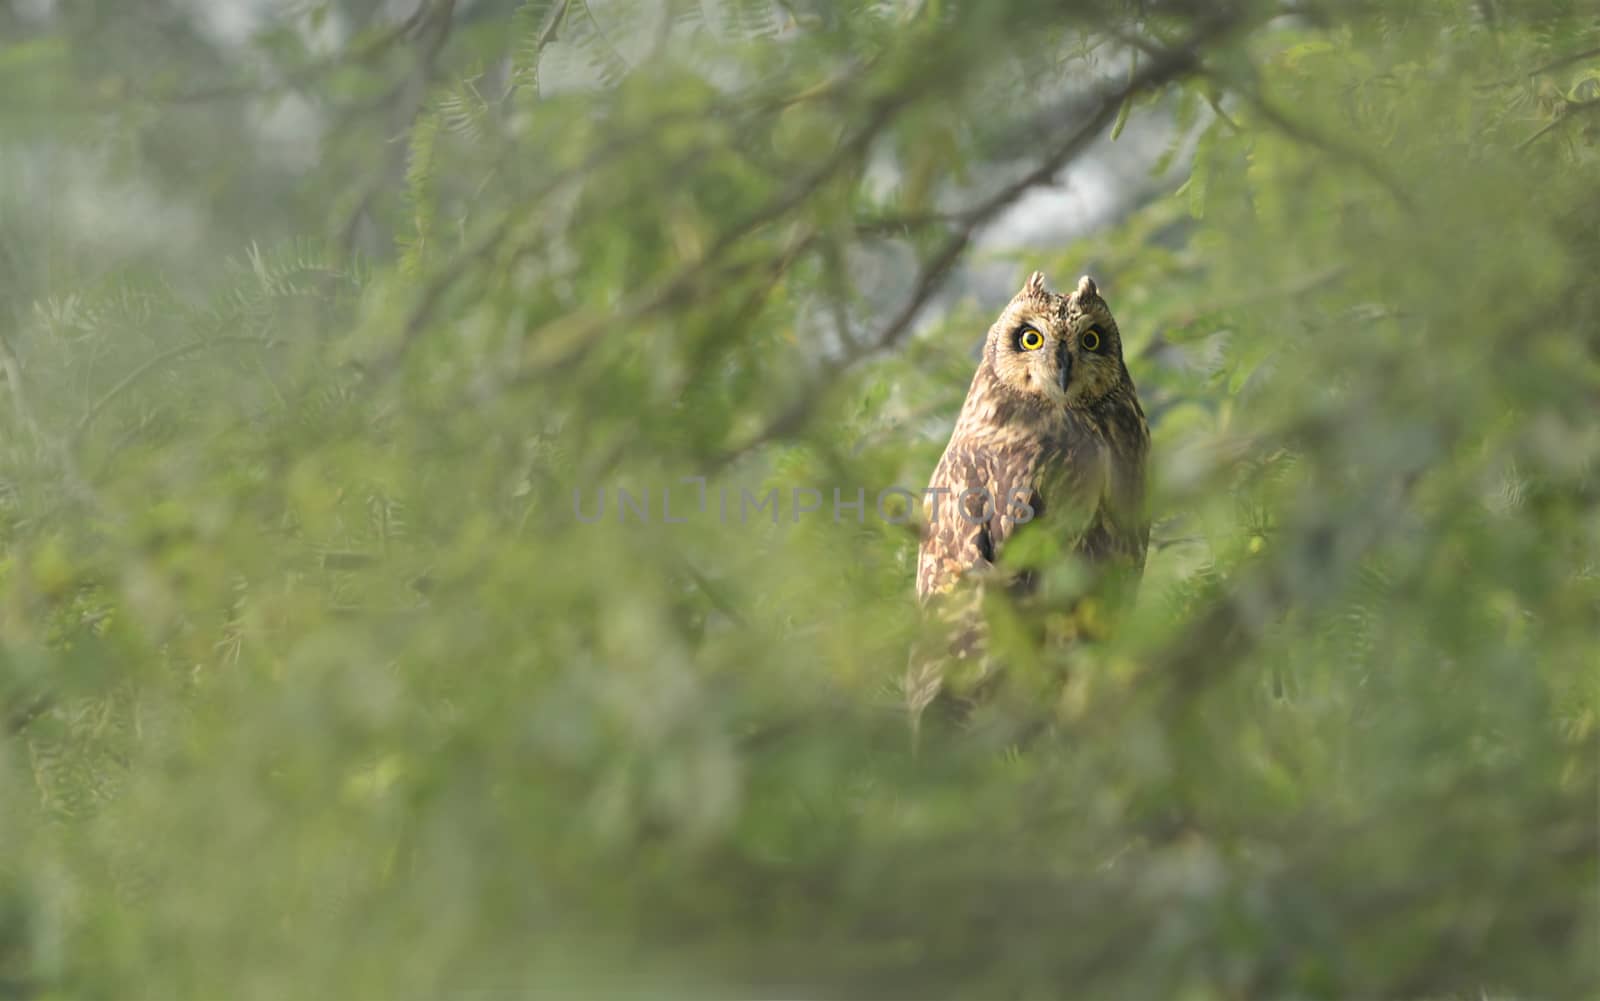 Short-eared owl by rkbalaji